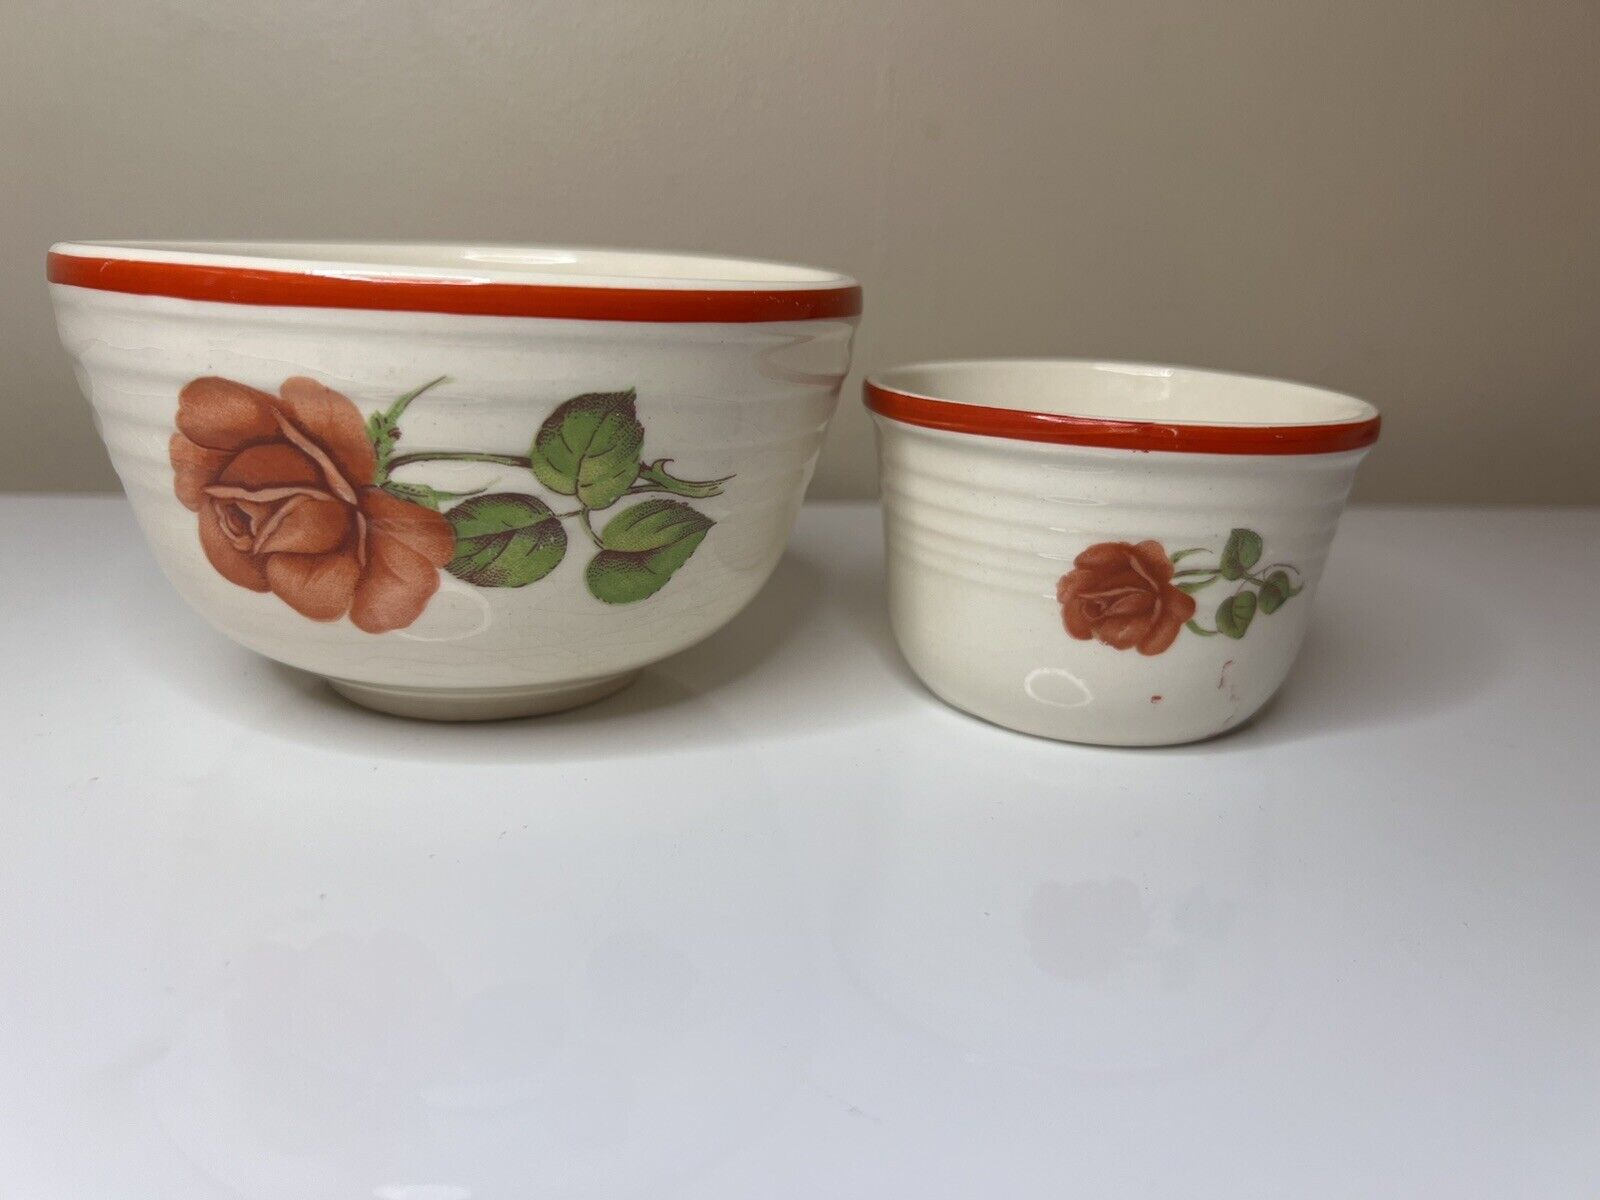 Bake Oven Vintage Bowls Nesting Mixing Floral Rose Design